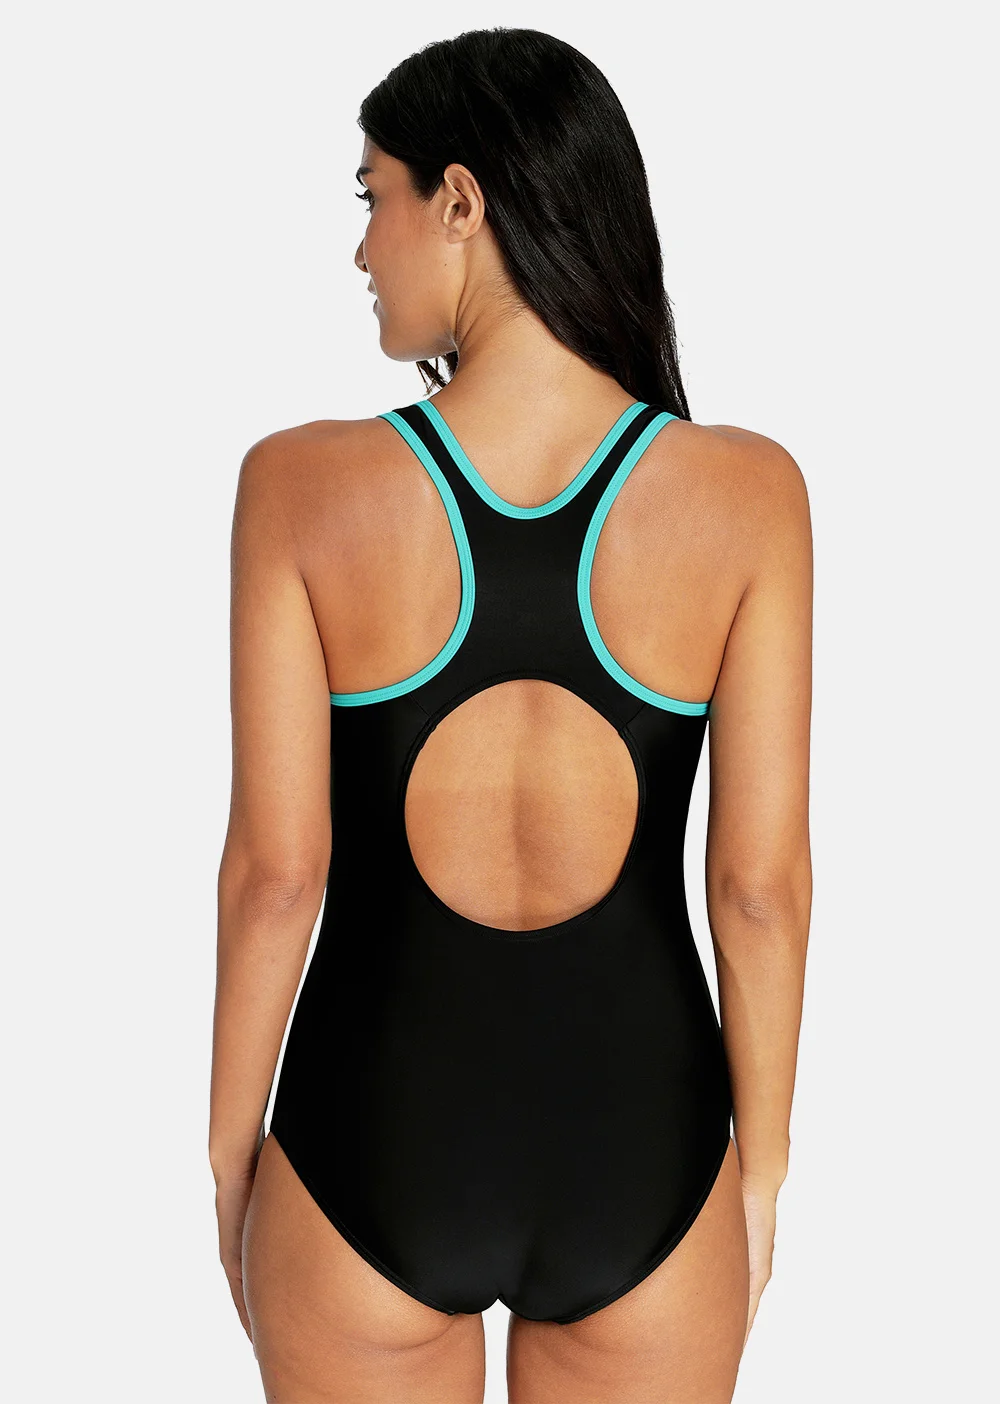 Attro цельный женский спортивный купальник Спортивная одежда для плавания мягкое бикини с открытой спиной пляжная одежда купальники Монокини